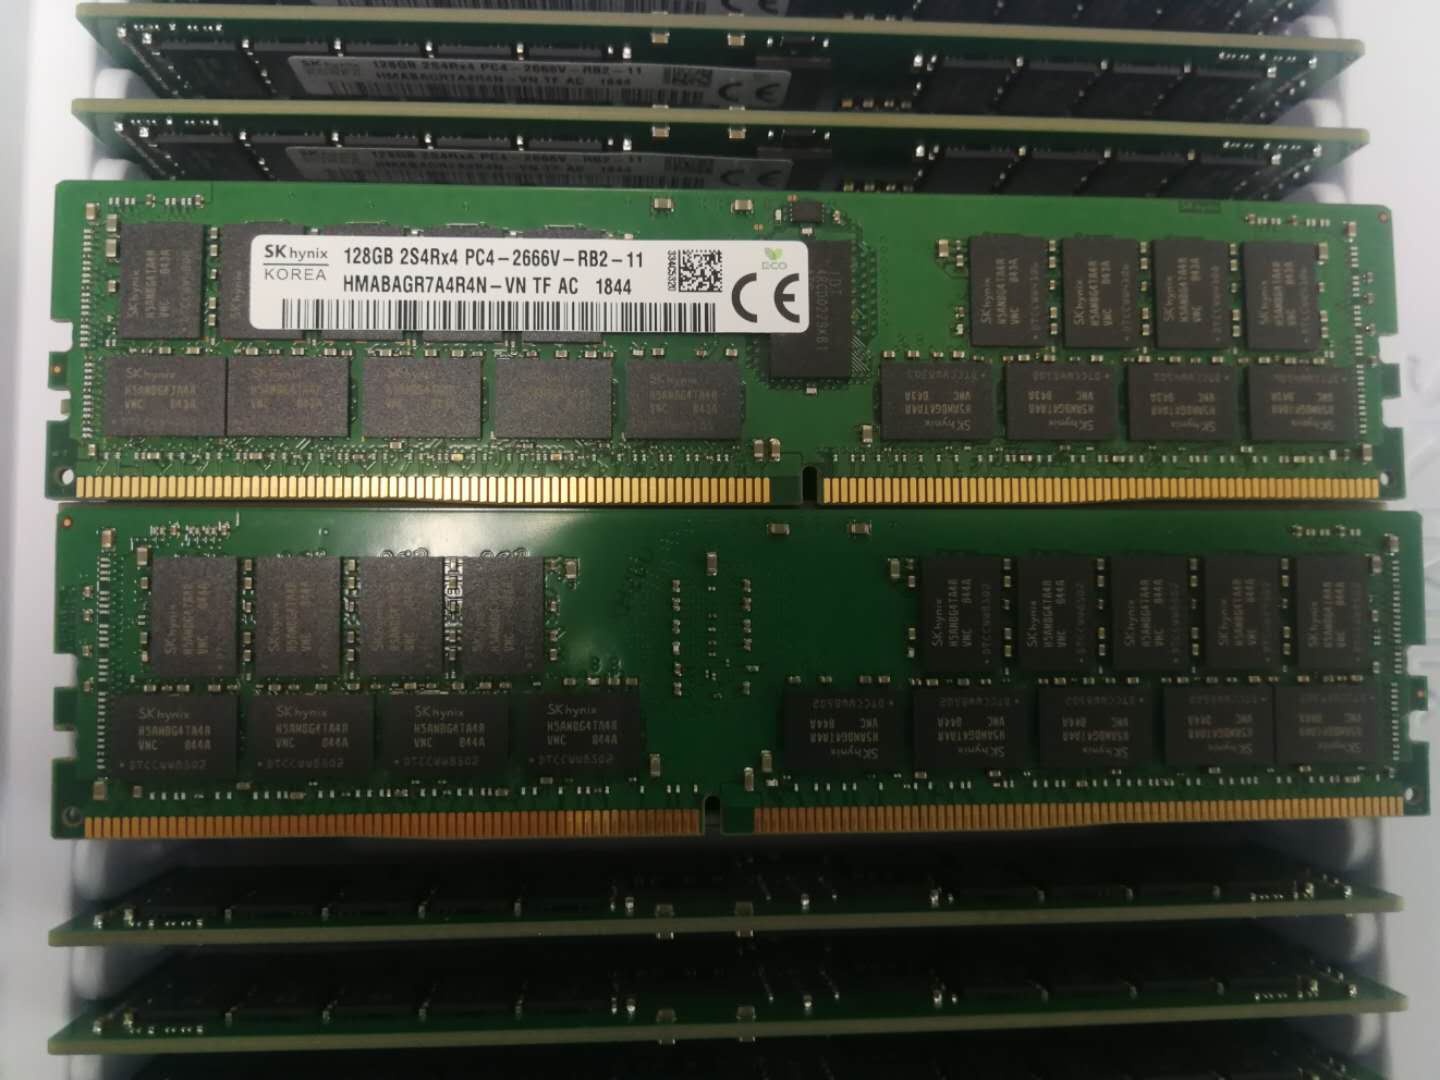 HMABAGR7A4R4N-VN SK全新原装128G 4RX4 2666V DDR4 服务器内存